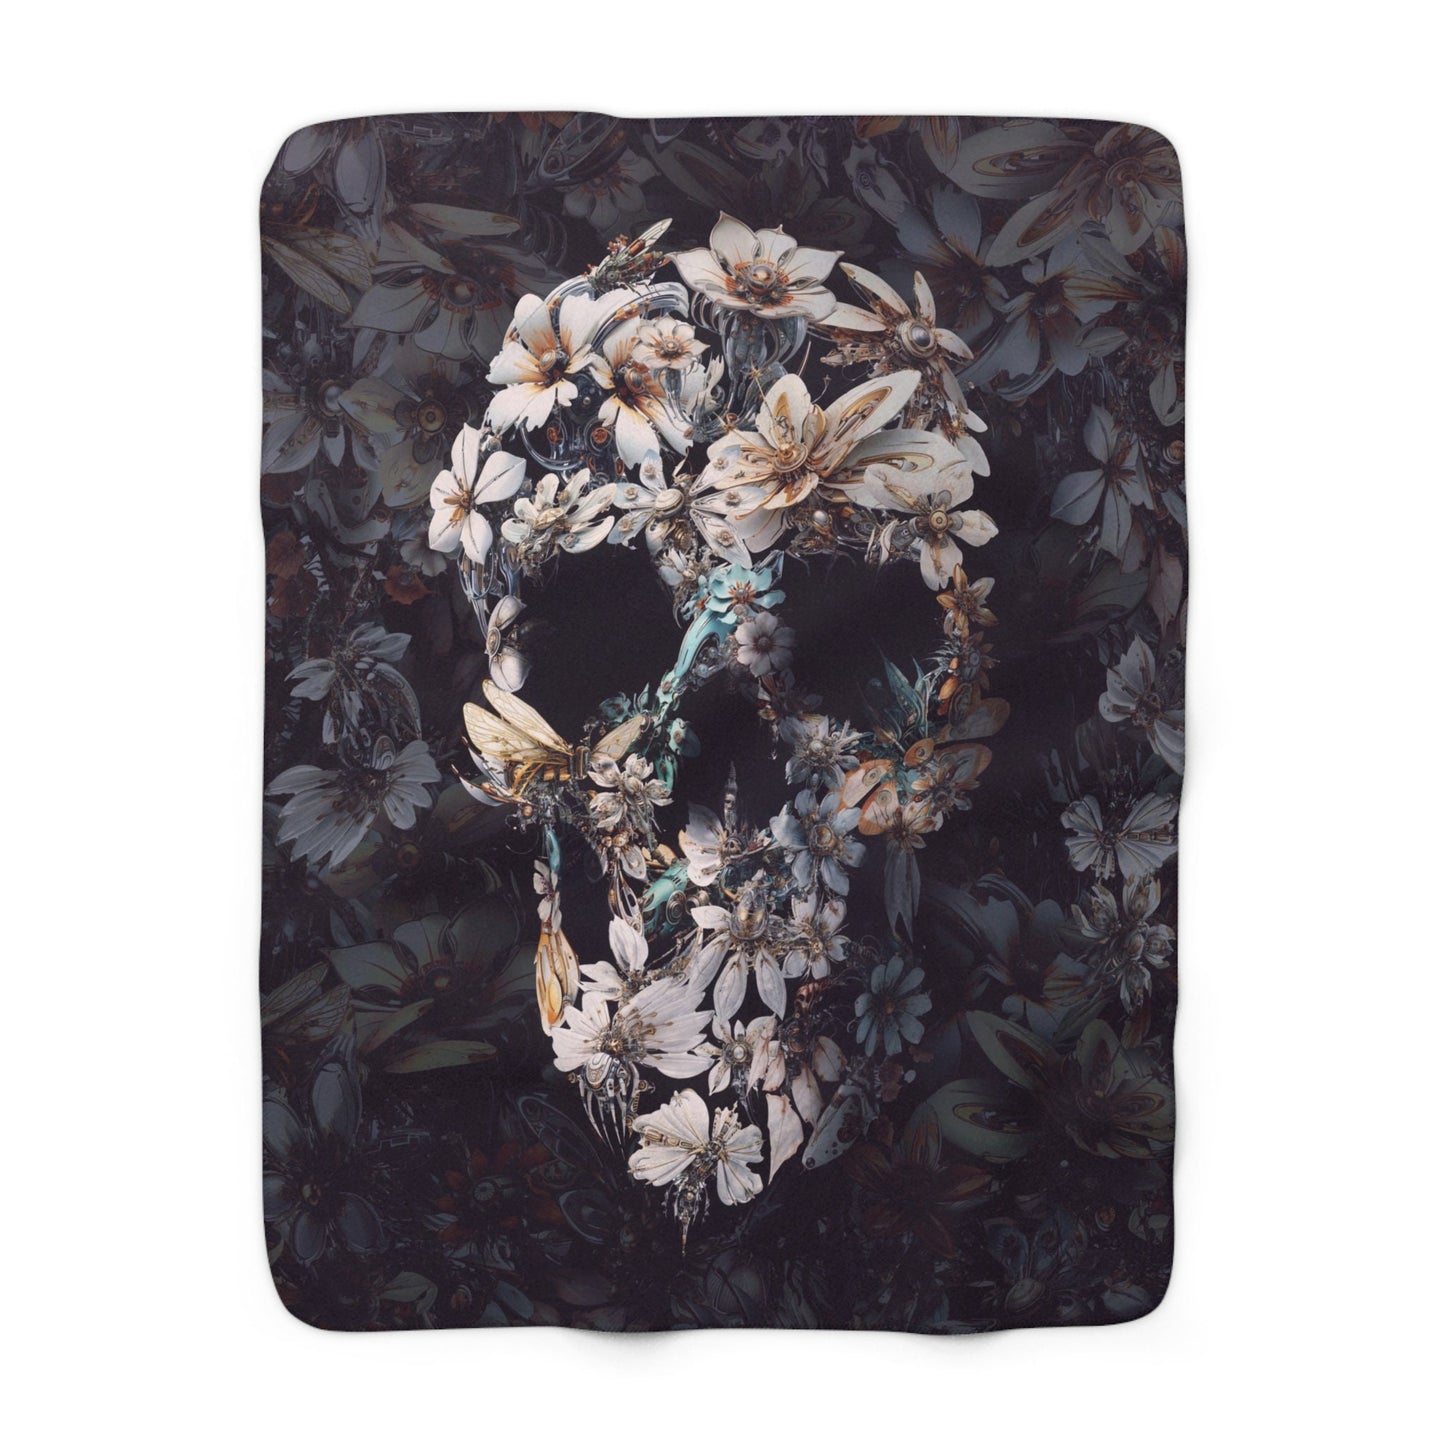 Cozy Sherpa Fleece Blanket, Floral Skull Fleece Blanket, Flower Skull Plush Back Fluffy Throw Blanket